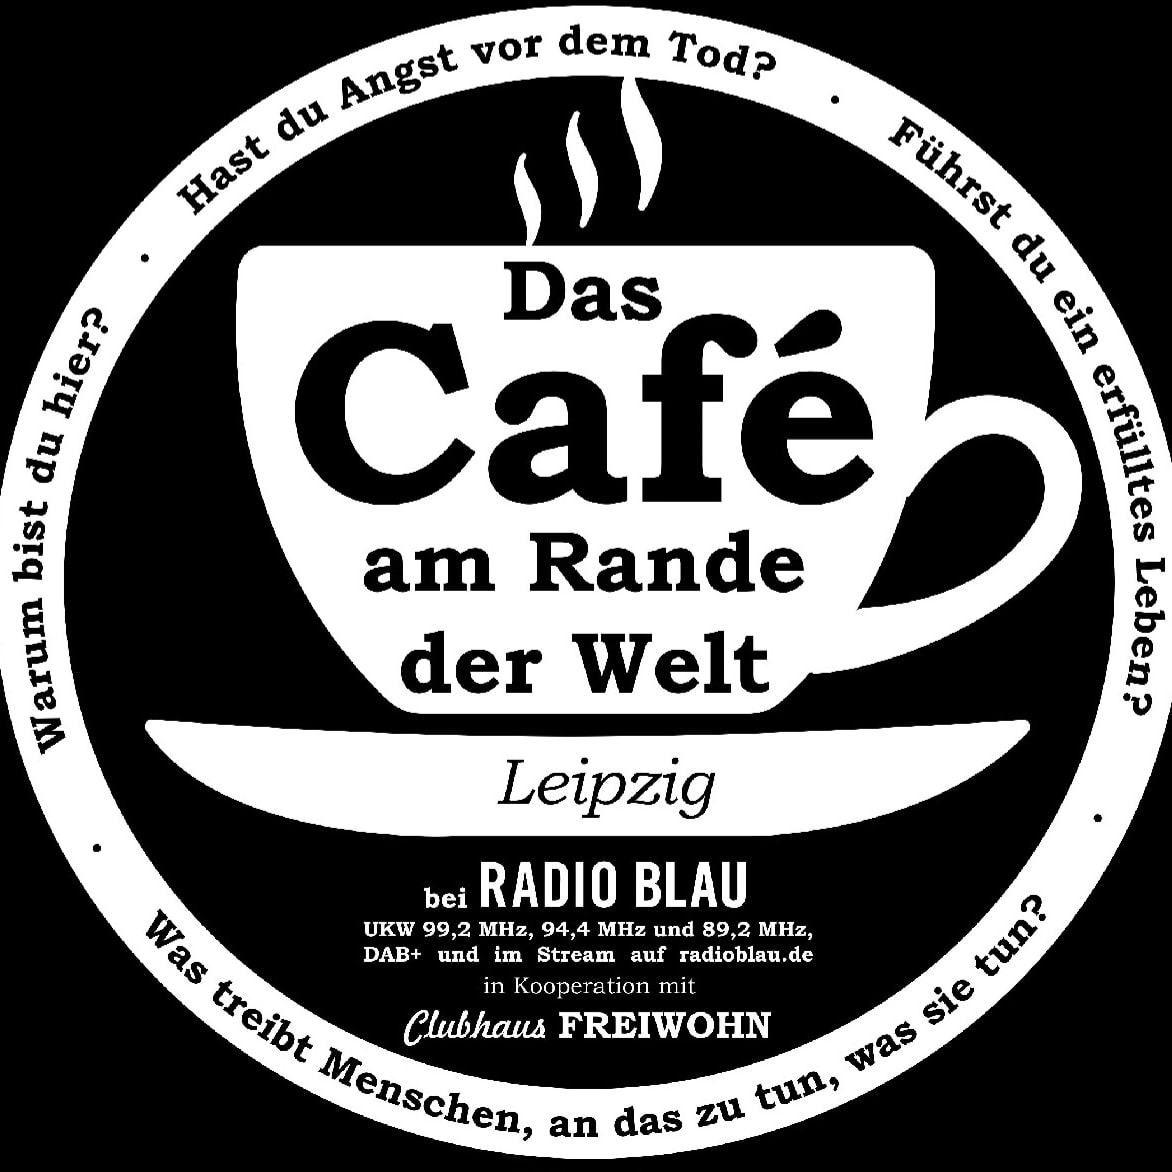 Das Café am Rande der Welt – Leipzig – Sinn des Lebens in der realen Welt (Banner)